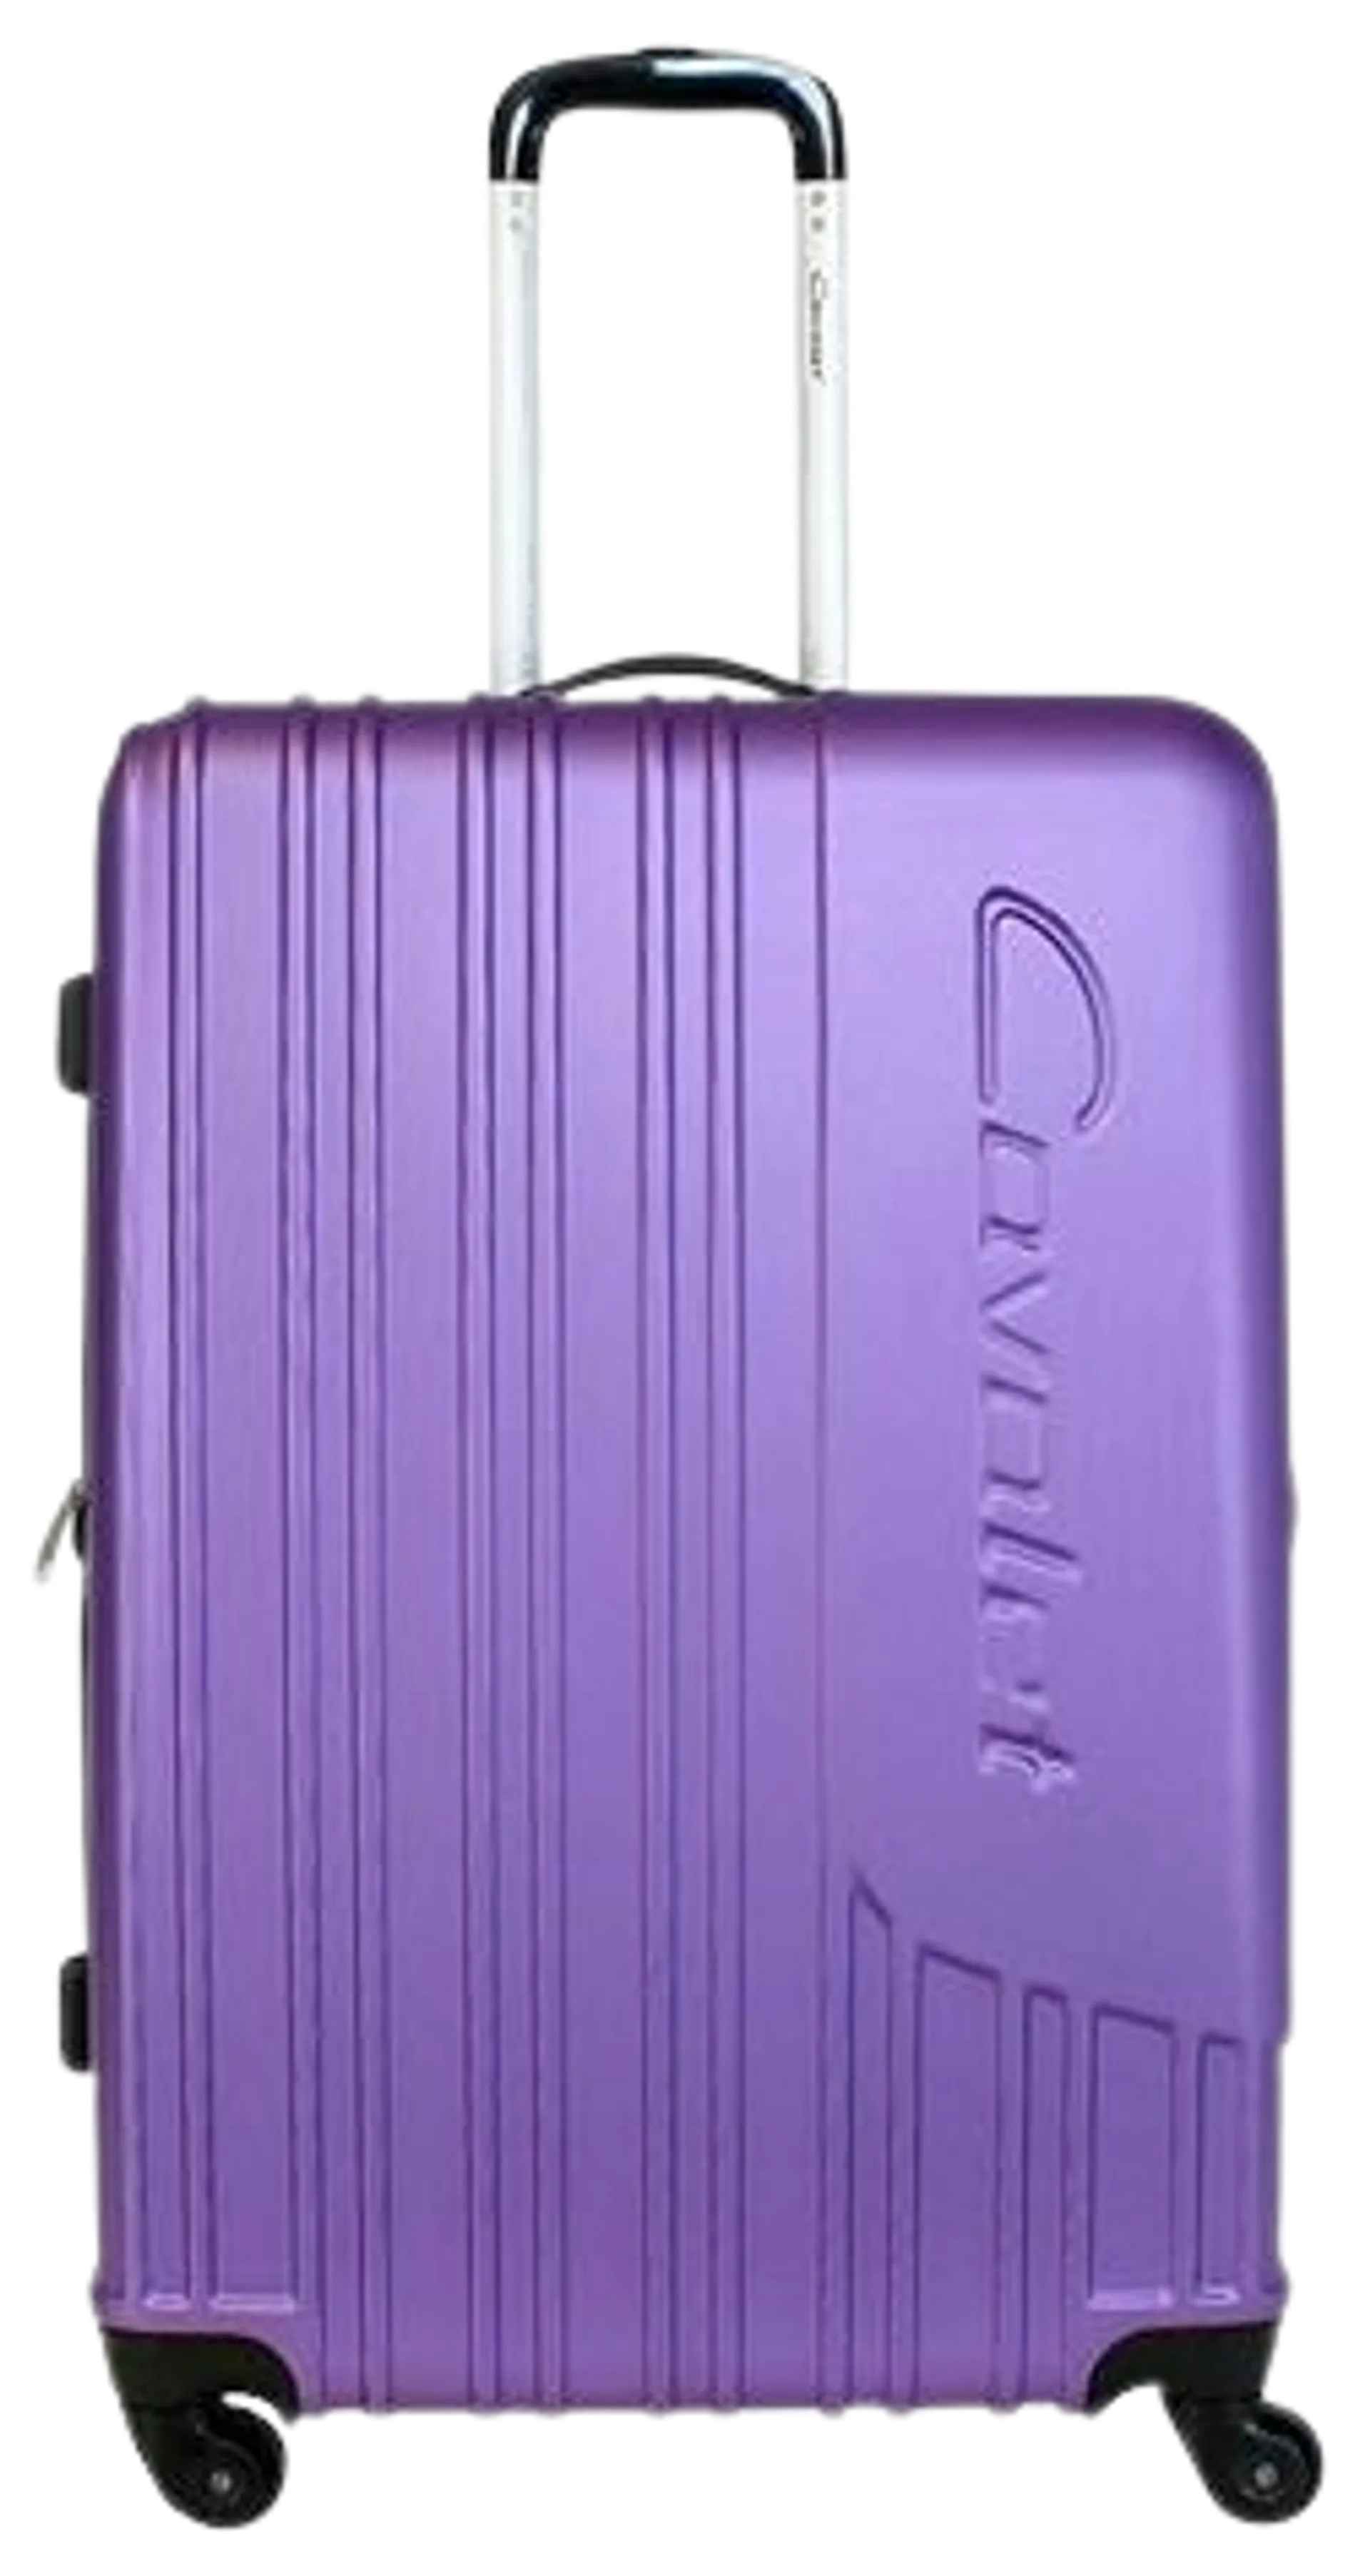 Cavalet Malibu matkalaukku L 73 cm, lila - 1